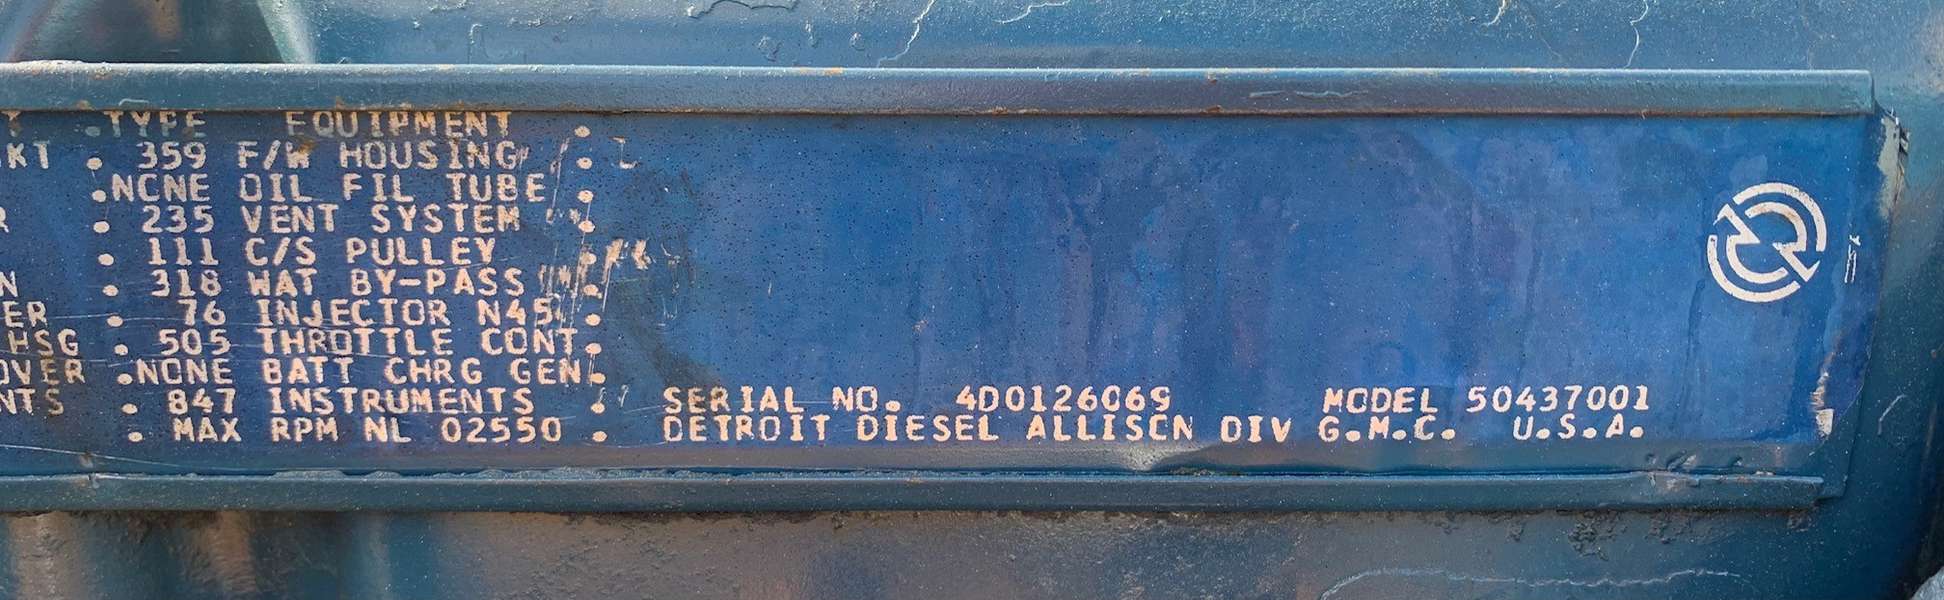 Used Detroit 4-53 Diesel Engine 4D0126069